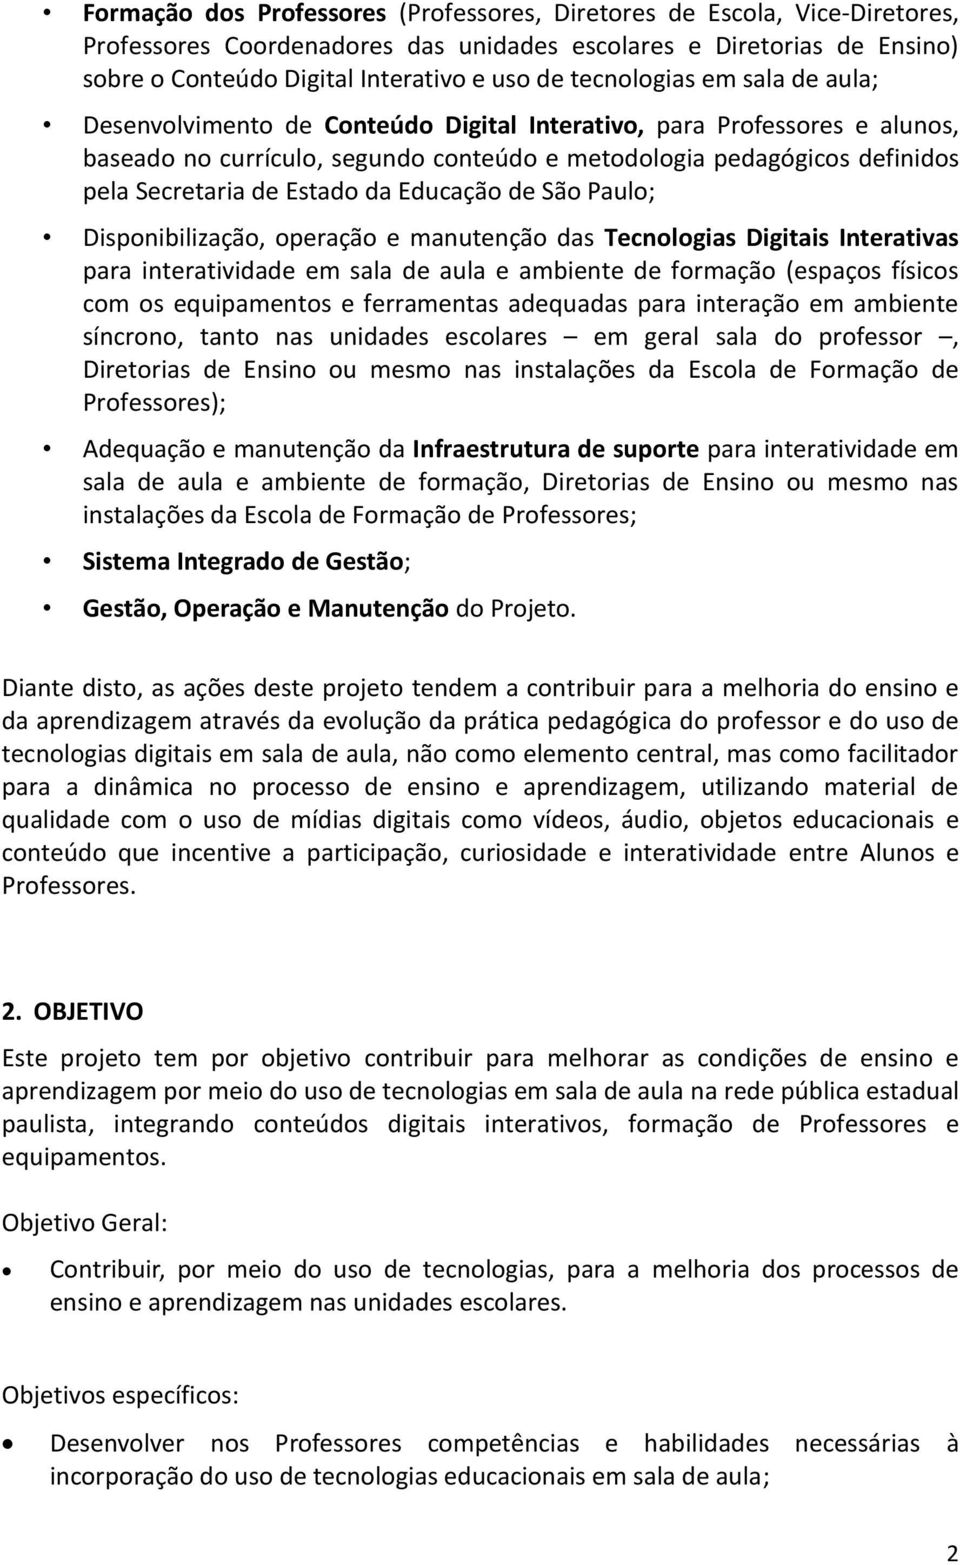 Estado da Educação de São Paulo; Disponibilização, operação e manutenção das Tecnologias Digitais Interativas para interatividade em sala de aula e ambiente de formação (espaços físicos com os